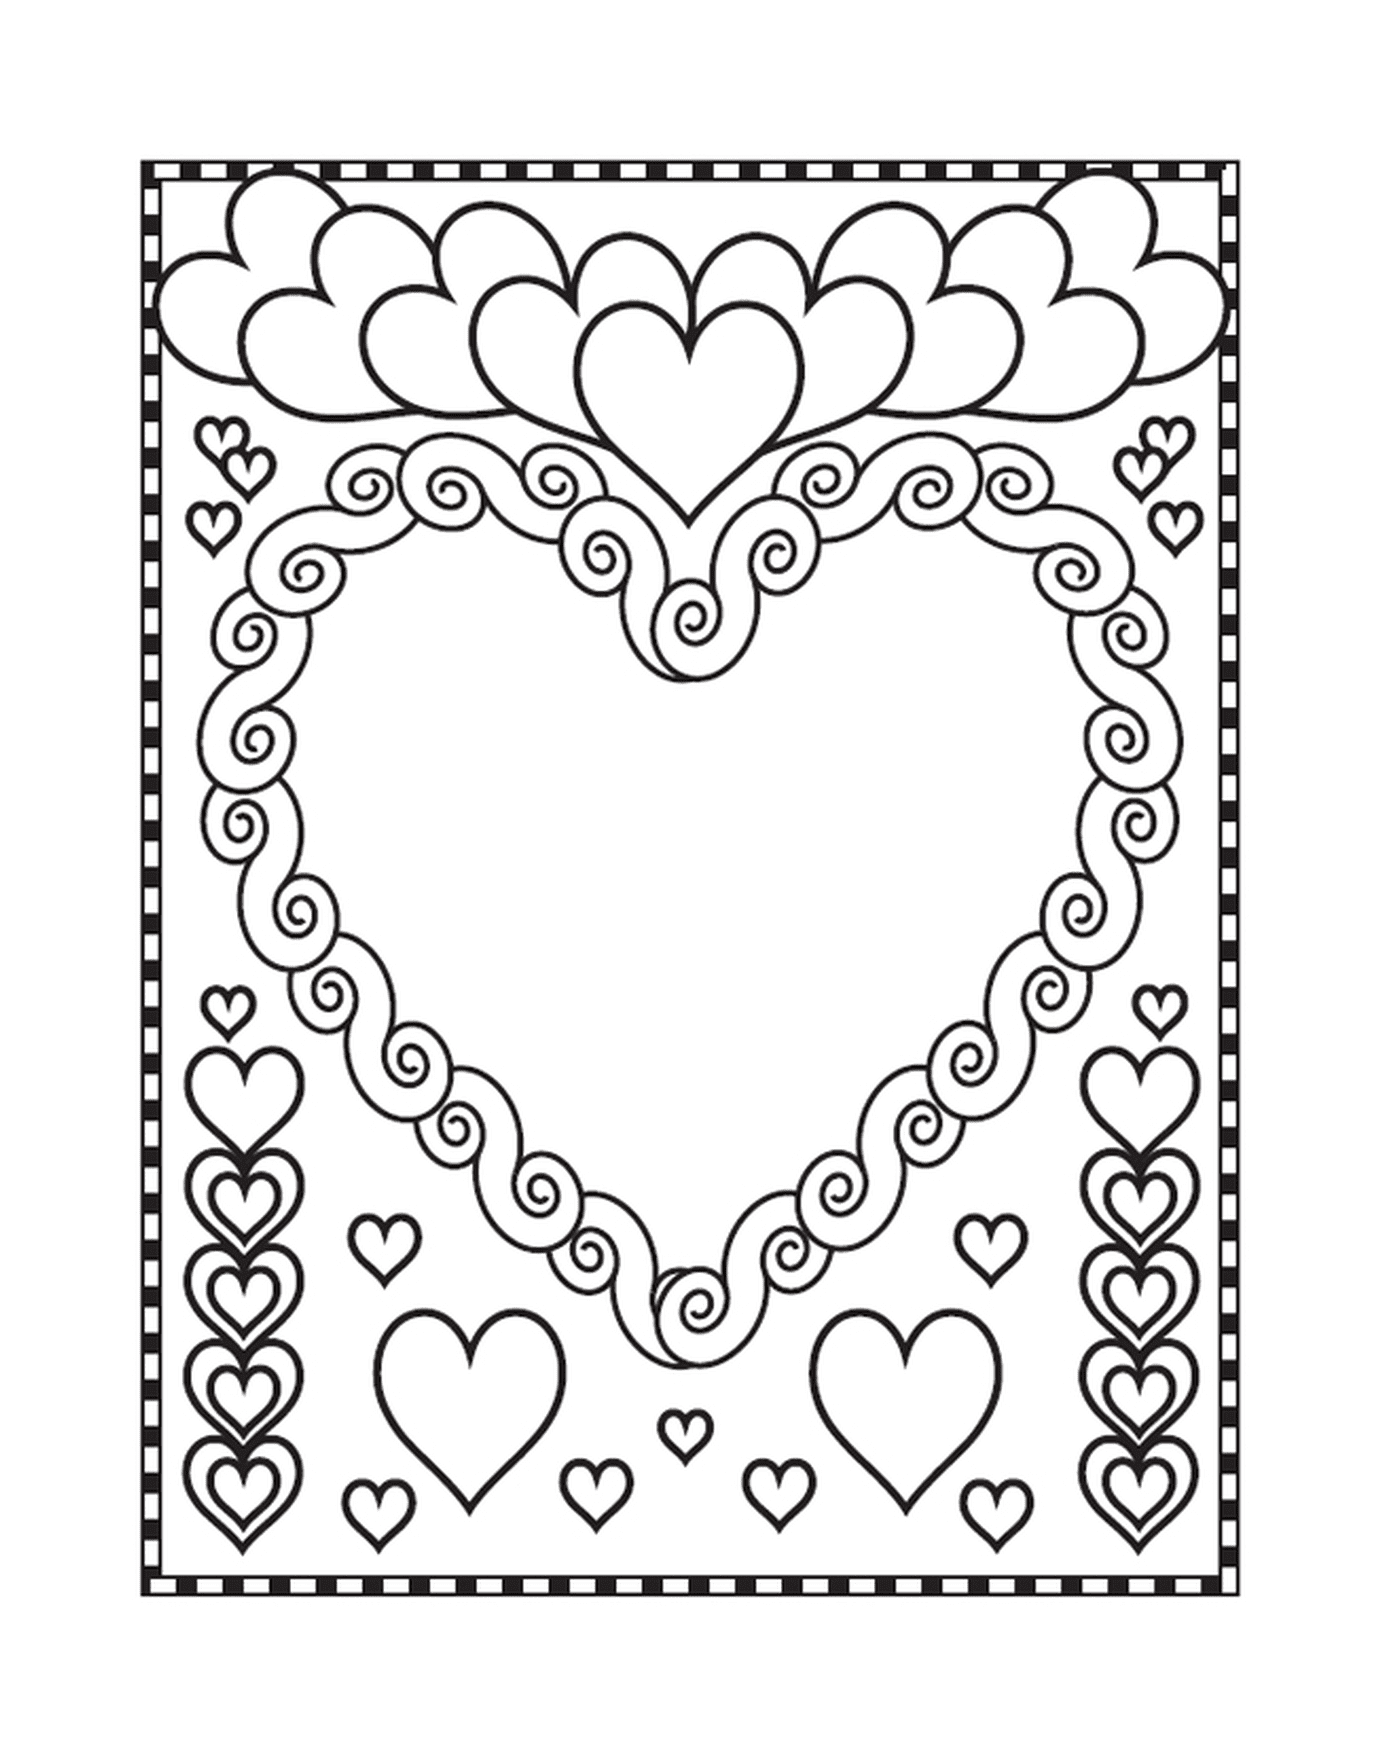  A heart-shaped frame 